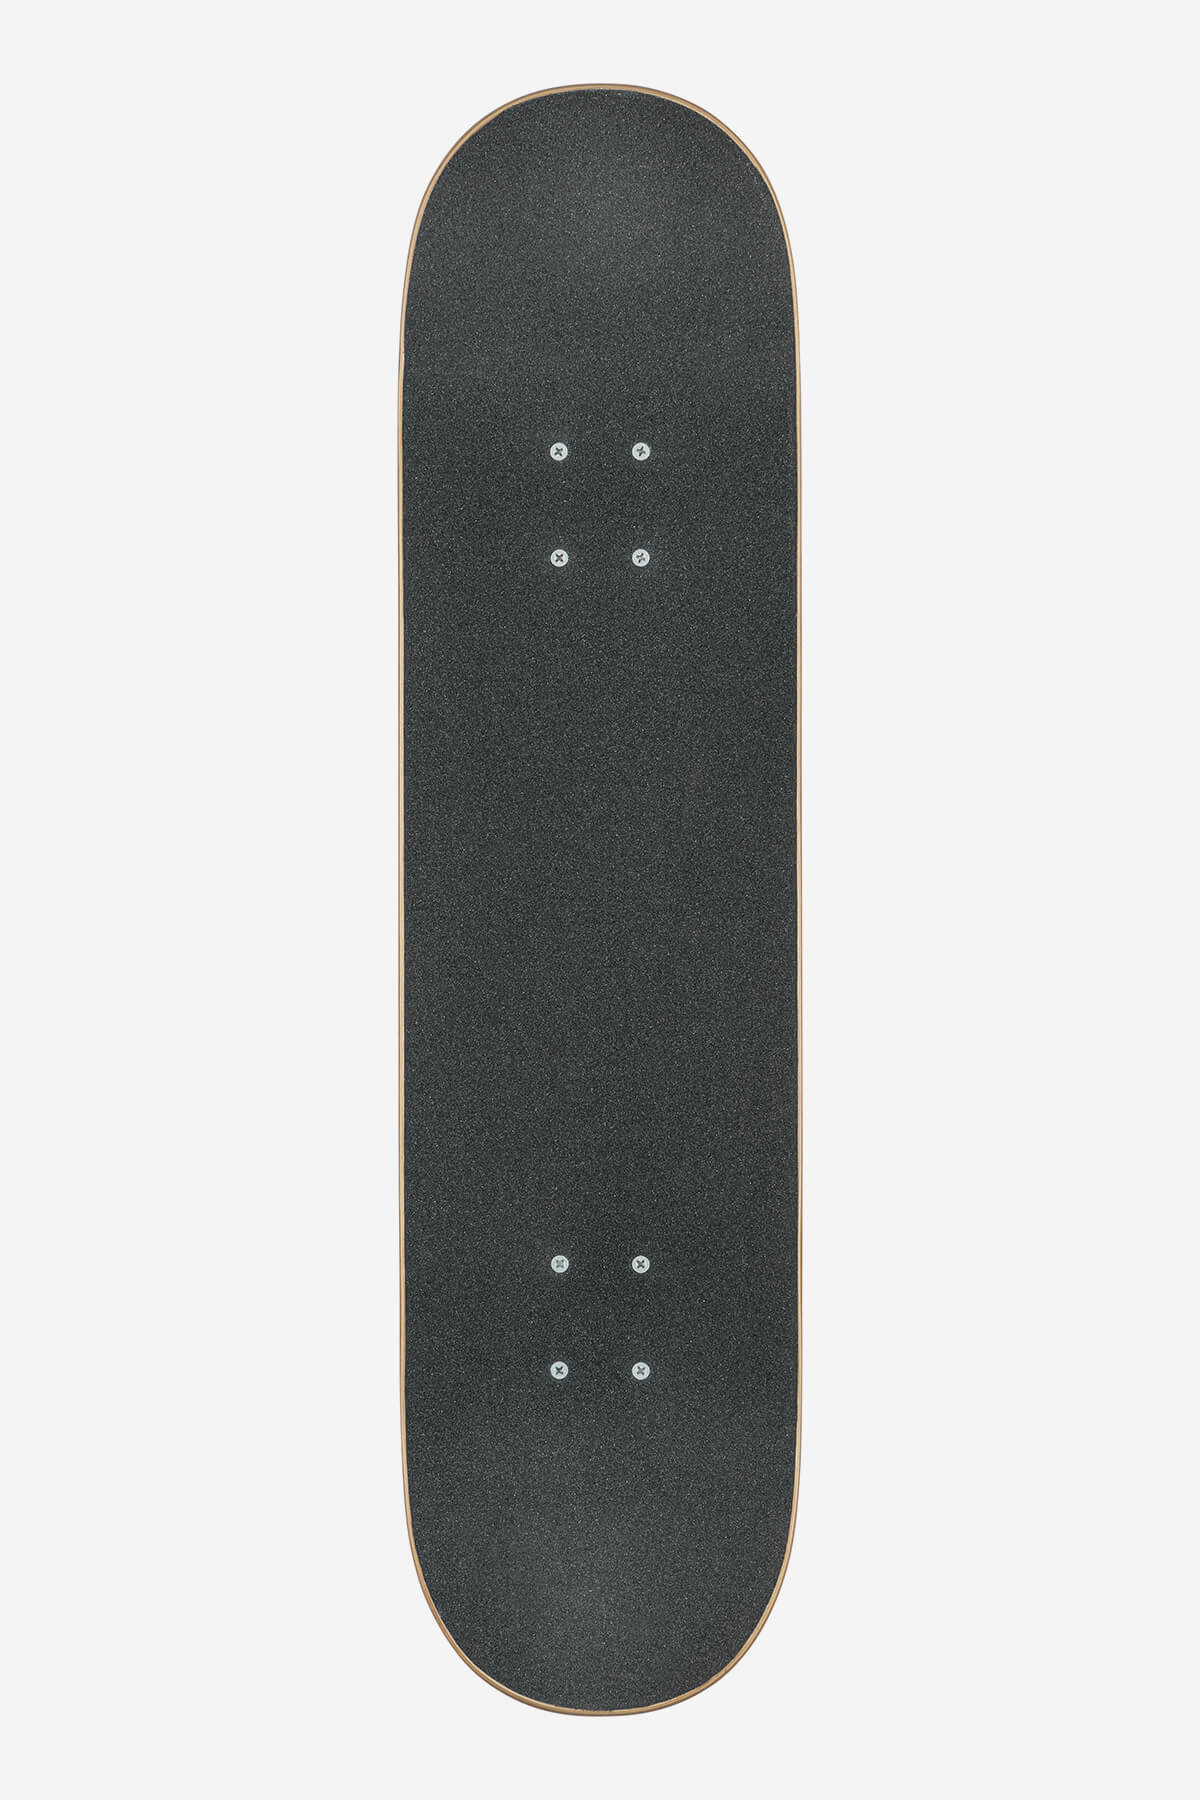 Globe - G0 Block Serif - White/Red - 8.0" Complete Skateboard